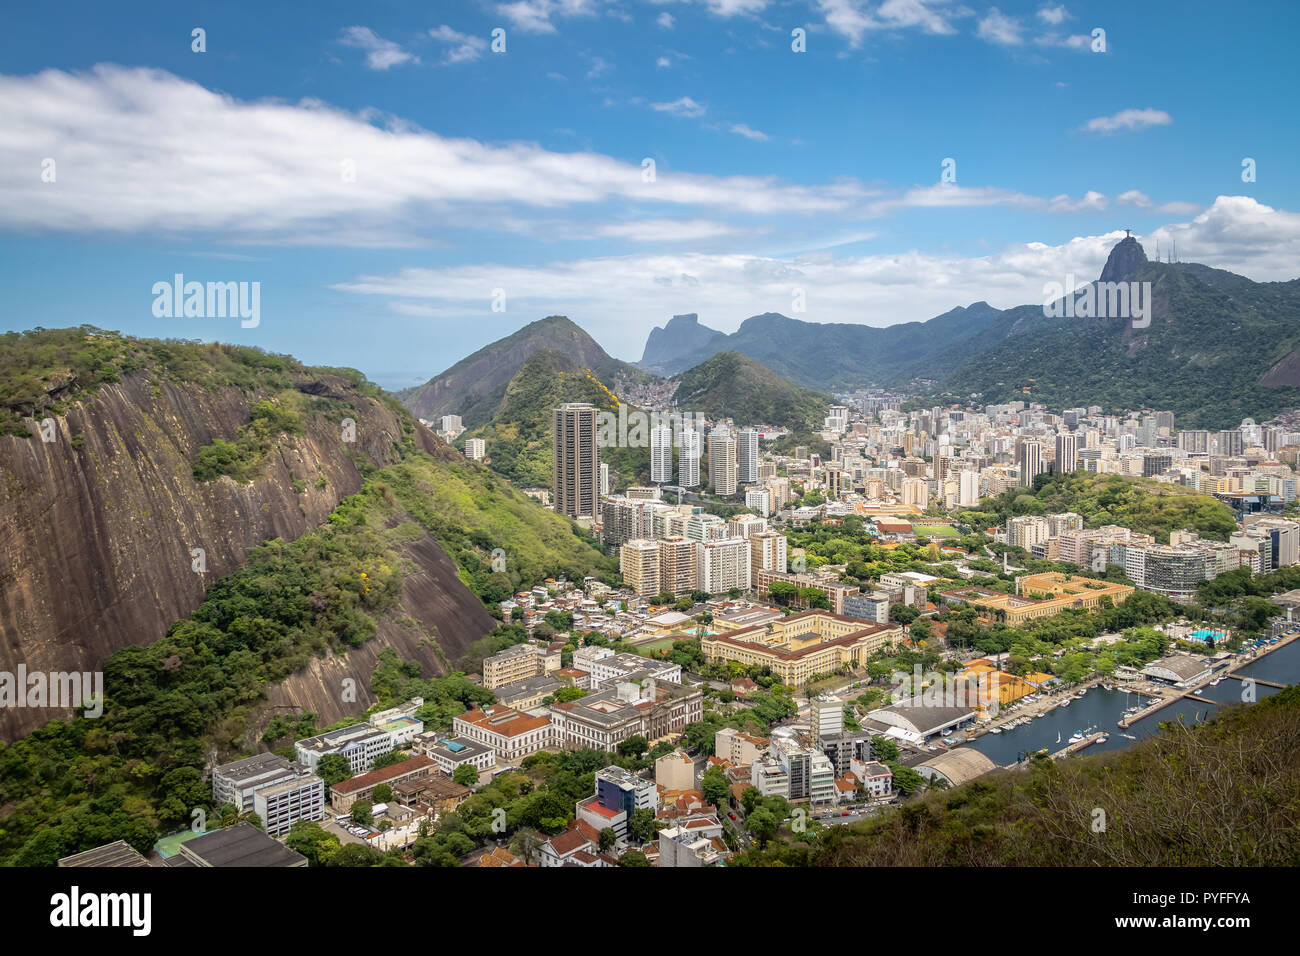 Vue aérienne de Rio de Janeiro avec Babilonia Hill et la montagne du Corcovado - Rio de Janeiro, Brésil Banque D'Images